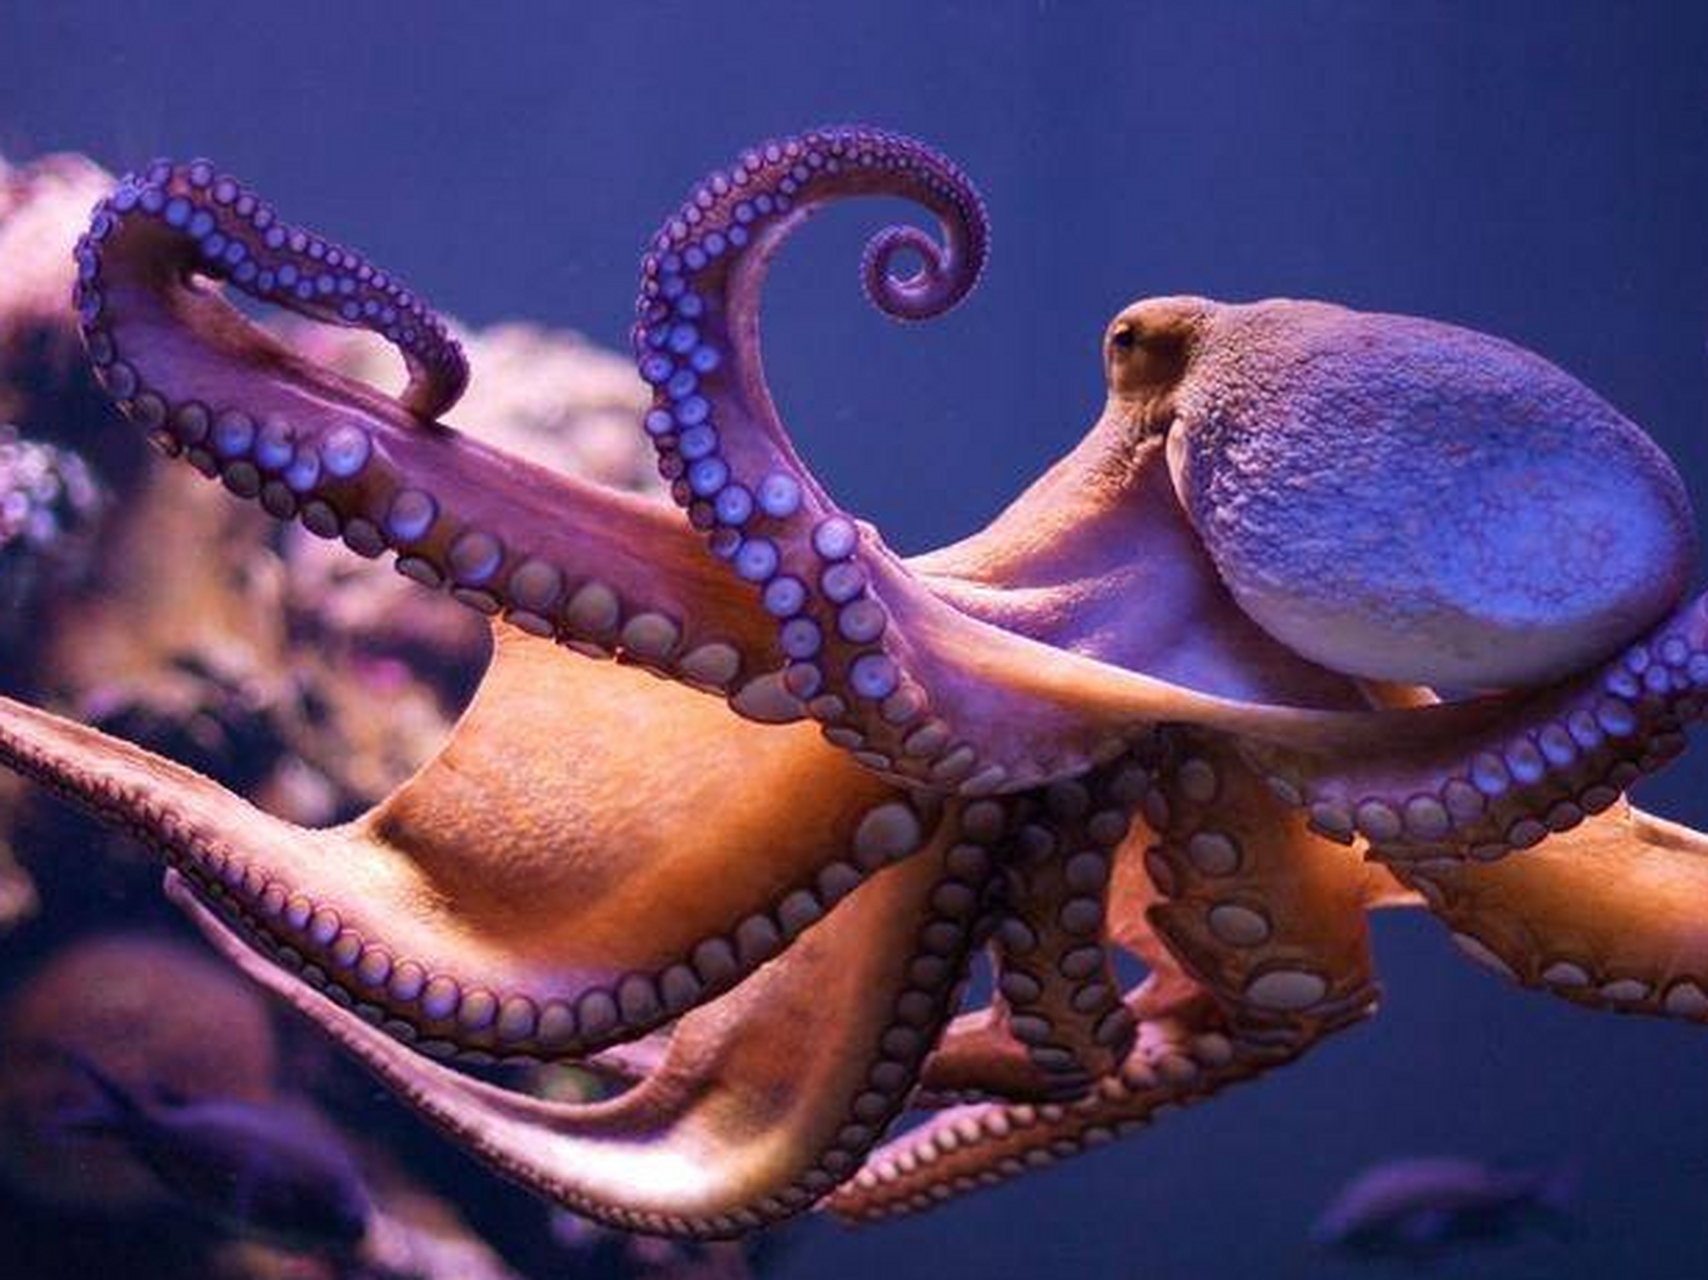 章鱼(octopus)是地球上一种极其独特的生物,具有令人惊叹的智慧和